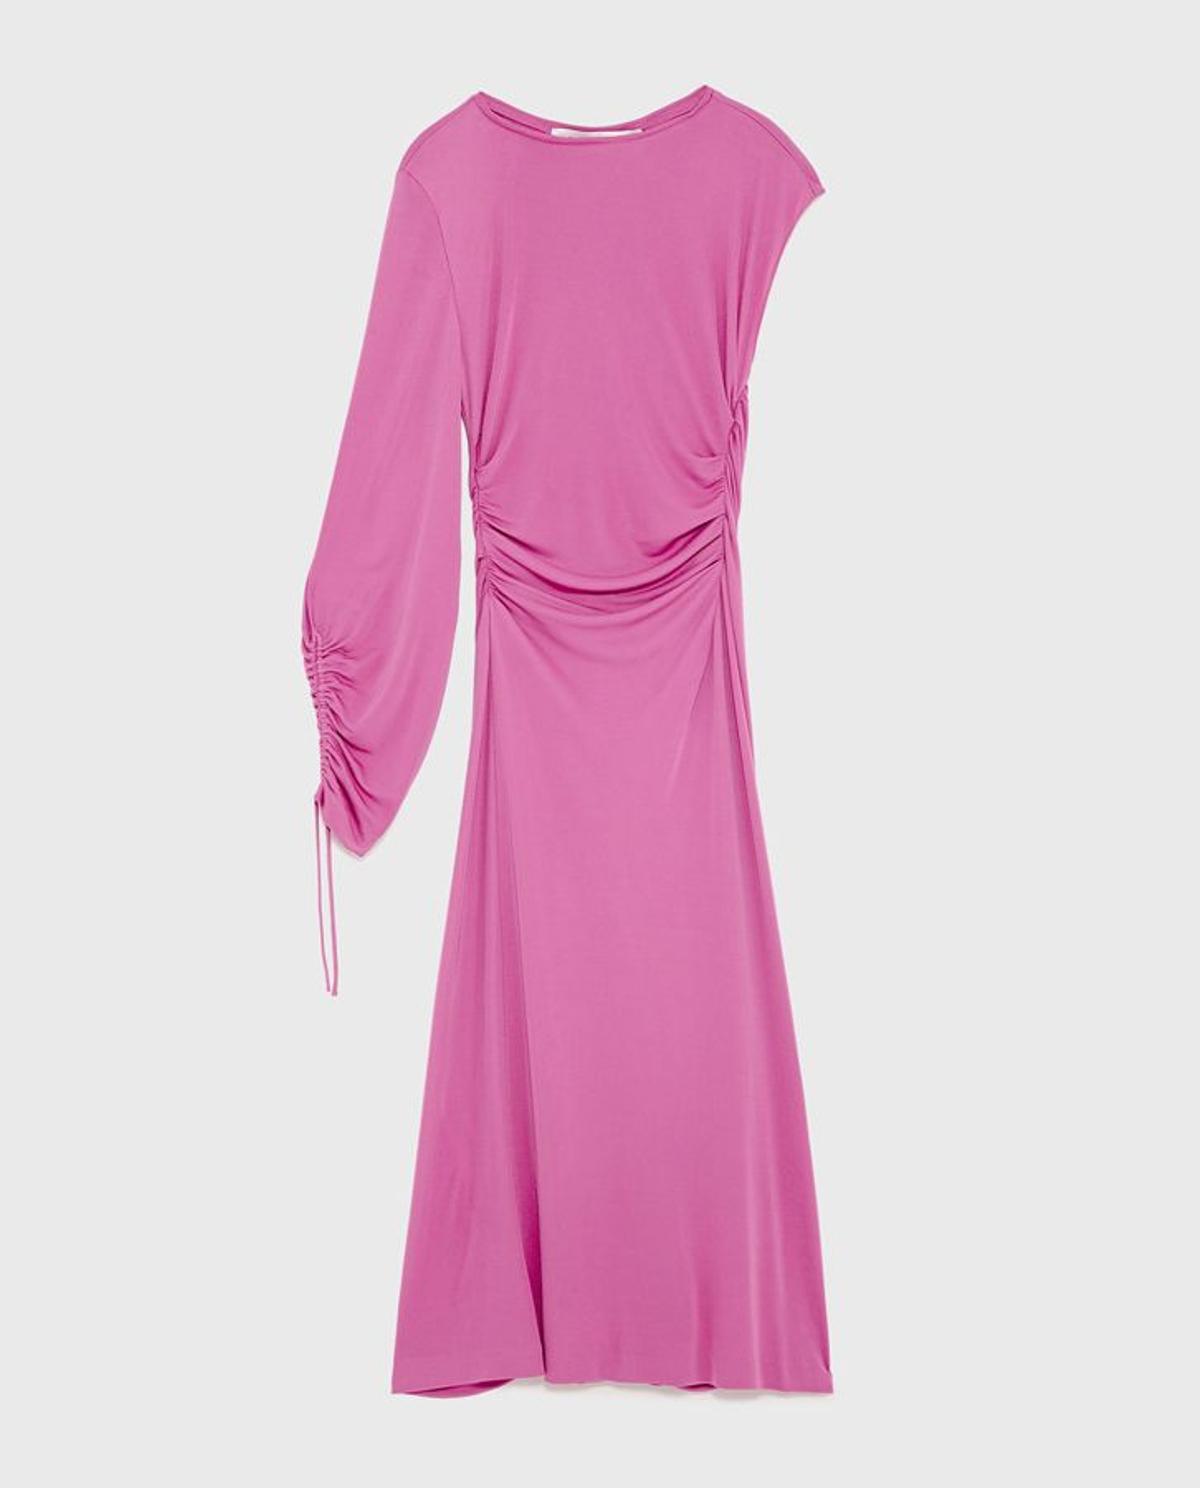 Zara Pre-fall 17: Vestido asimétrico rosa